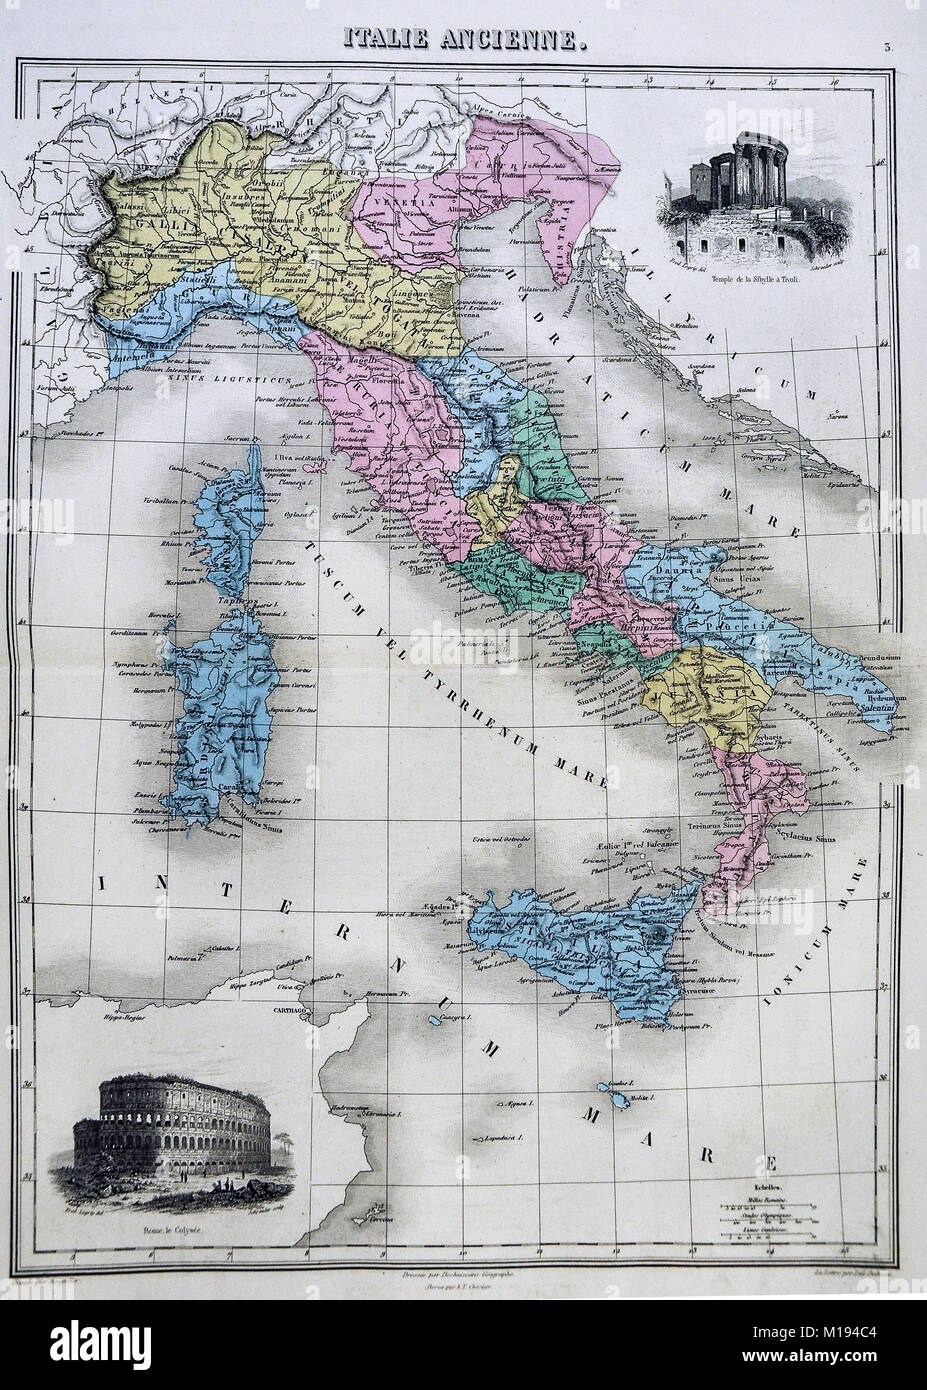 1877 Migeon mappa - Italia Antica durante il periodo romano con vignette  del Colosseo e il Tempio di Vesta a Tivoli Foto stock - Alamy